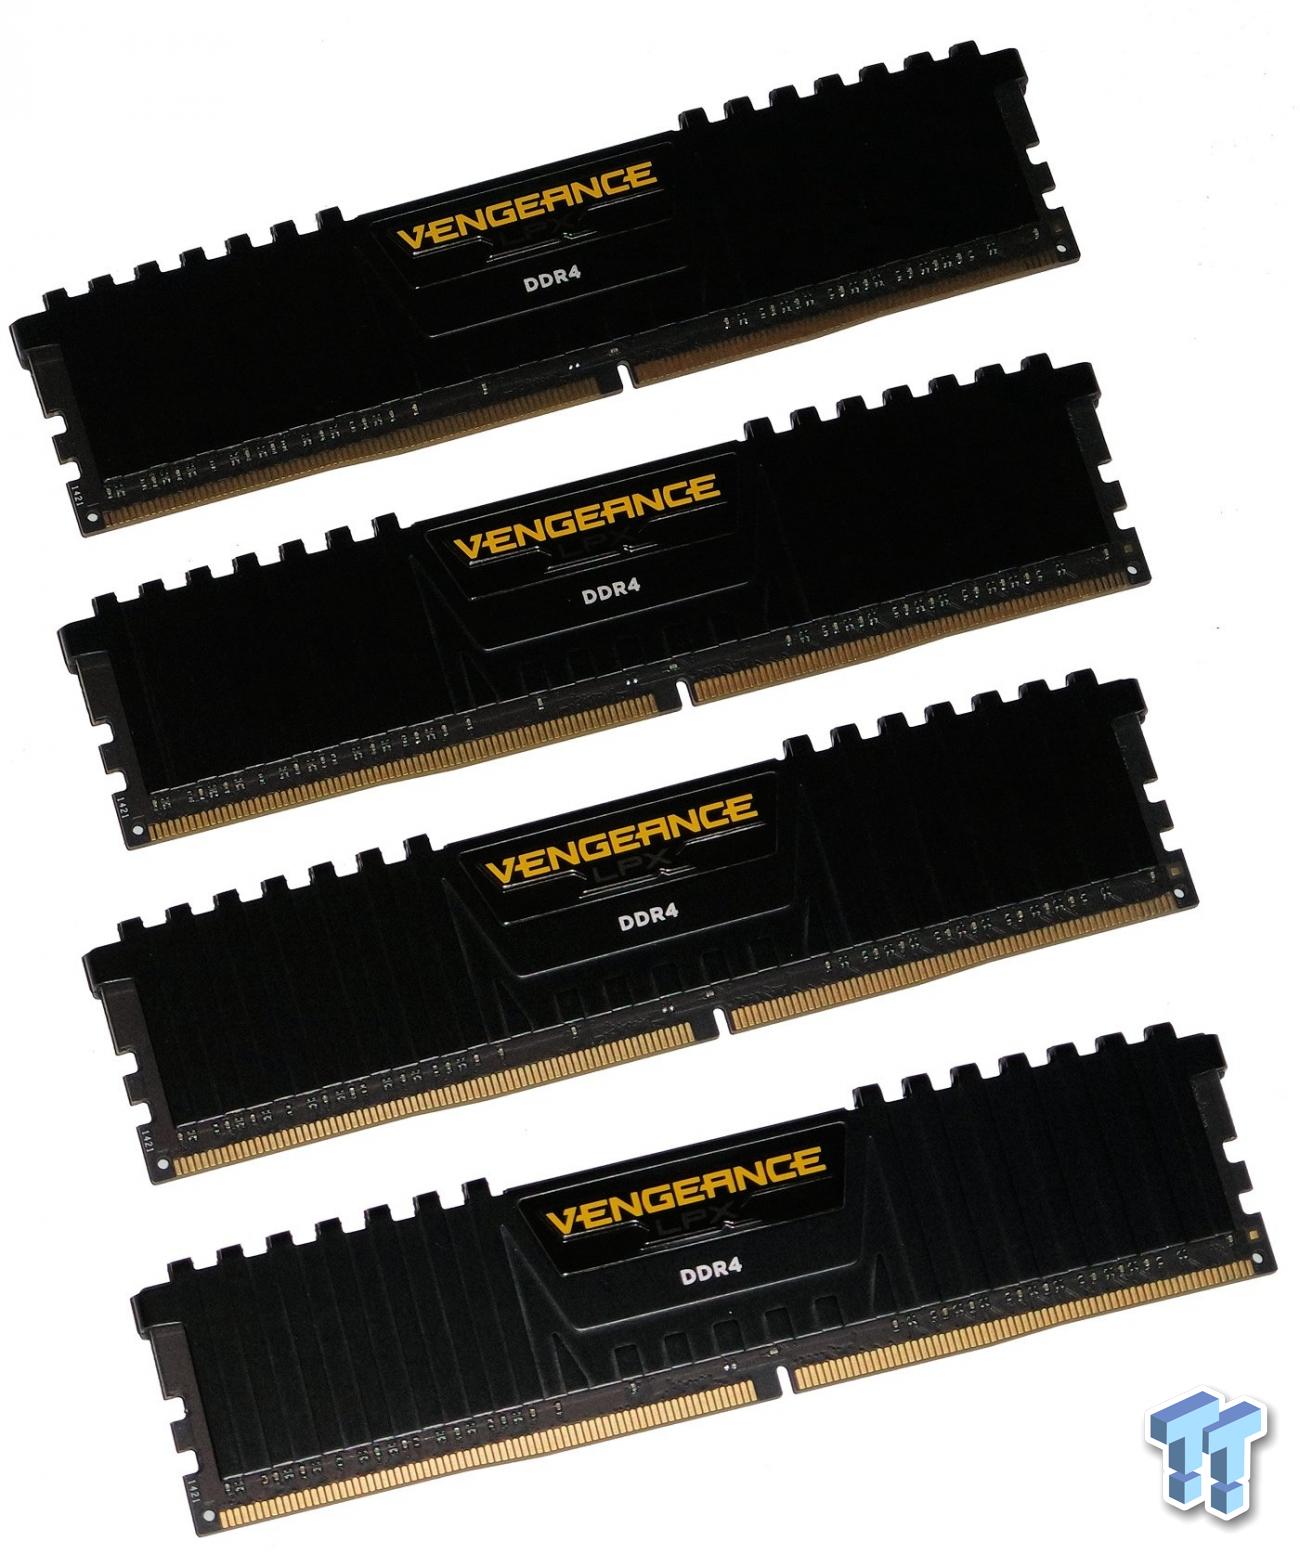 Corsair Vengeance LPX DDR4-2800 Quad-Channel Memory Kit Review